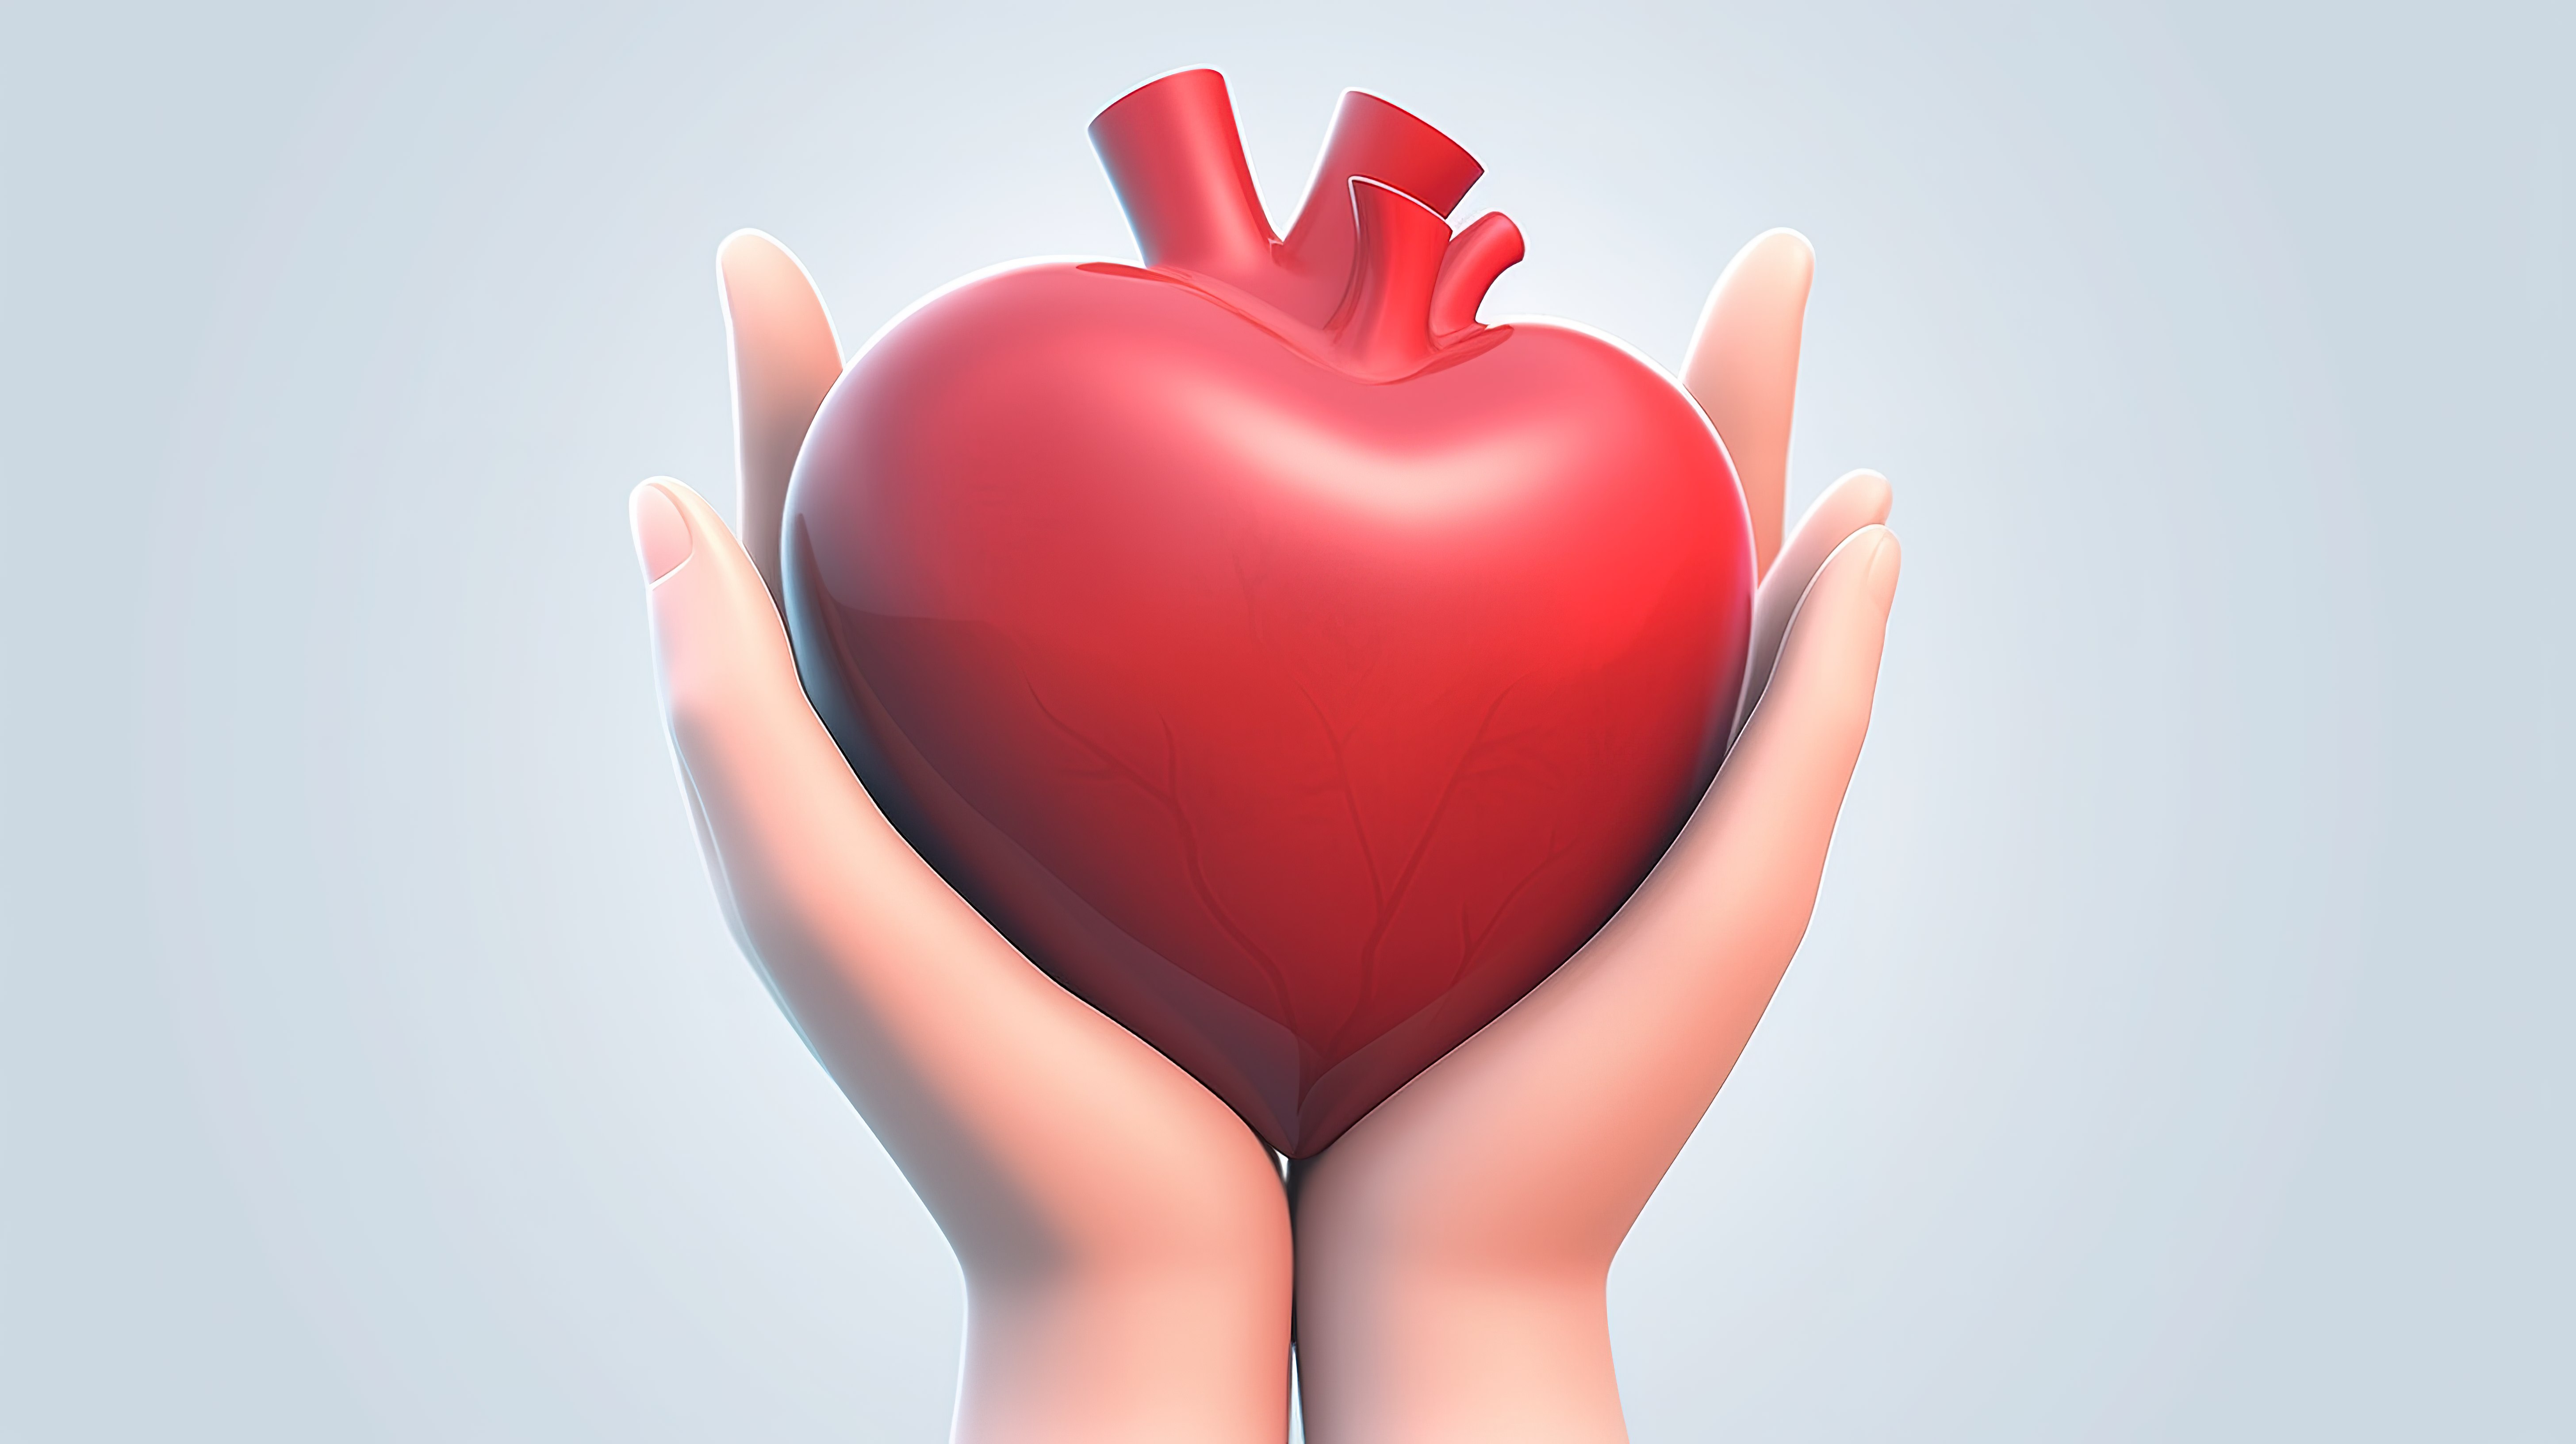 卡通风格3D插画手捧红心象征器官捐赠家庭保险世界心脏日世界卫生日感恩善良感恩与爱图片